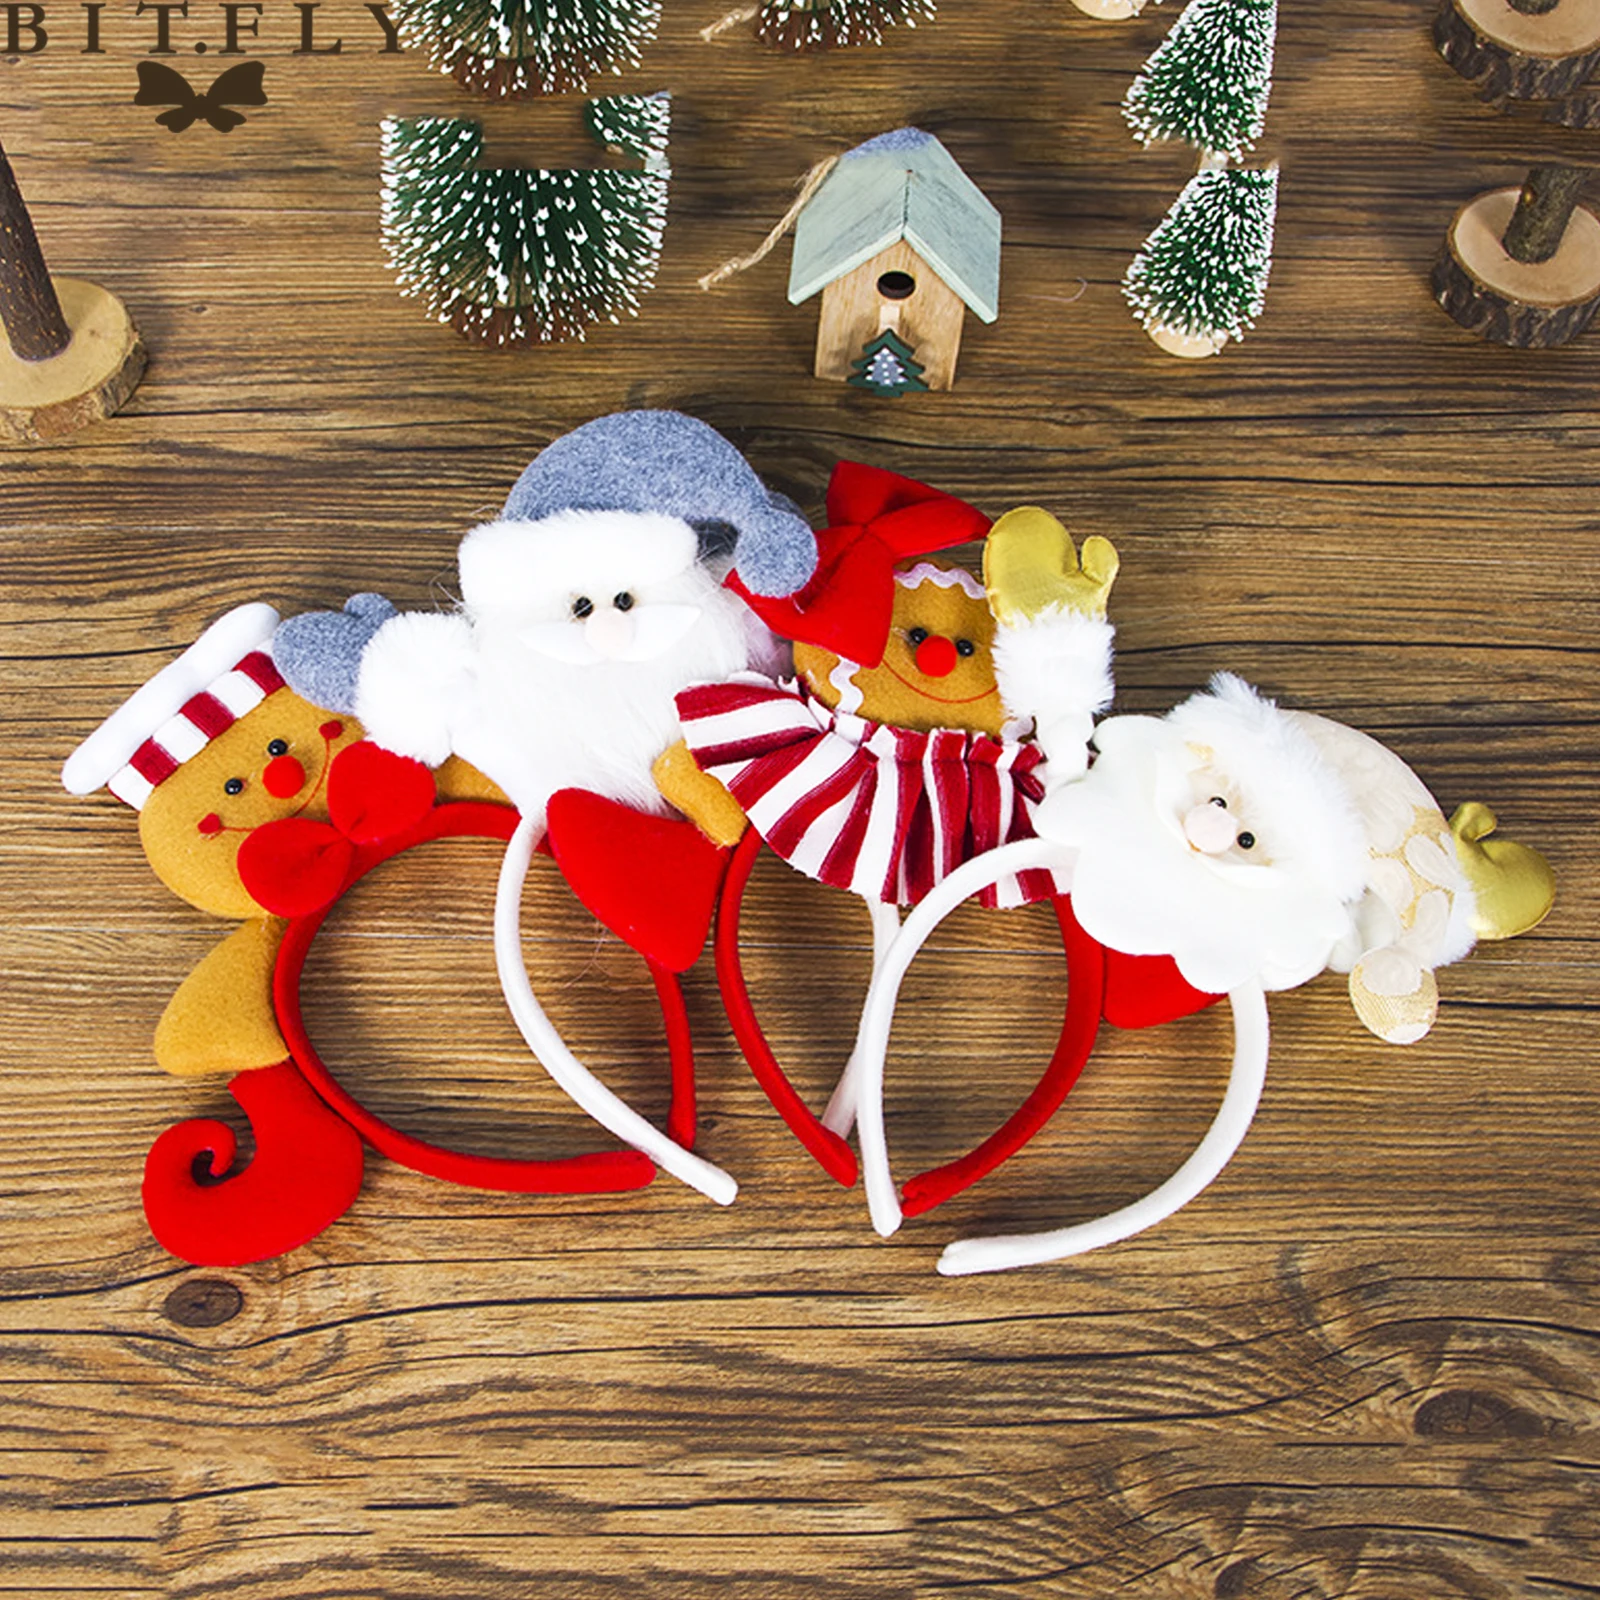 1 шт., Рождественская повязка на голову, повязка на голову с рогами, снежинками, рождественской елкой, обруч на голову, головные уборы, рождественские, вечерние, для детей, подарок